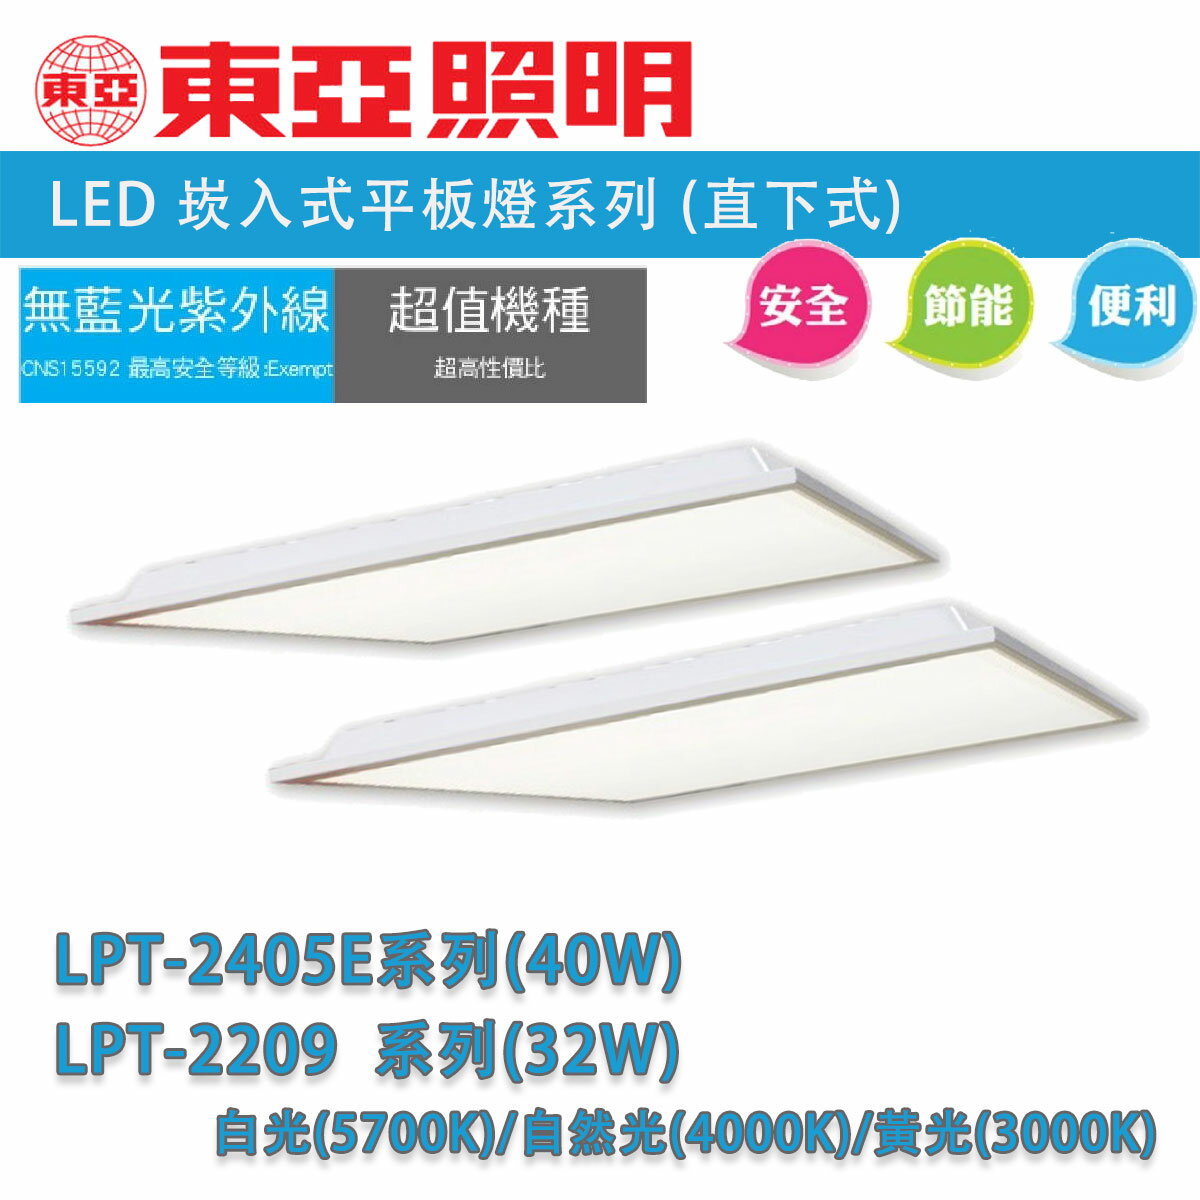 東亞 2X2 LED 直下式 平板燈 全電壓 32W(LPT-2209) / 40W(LPT-2405E) 白光 自然光 黃光 〖永光照明〗